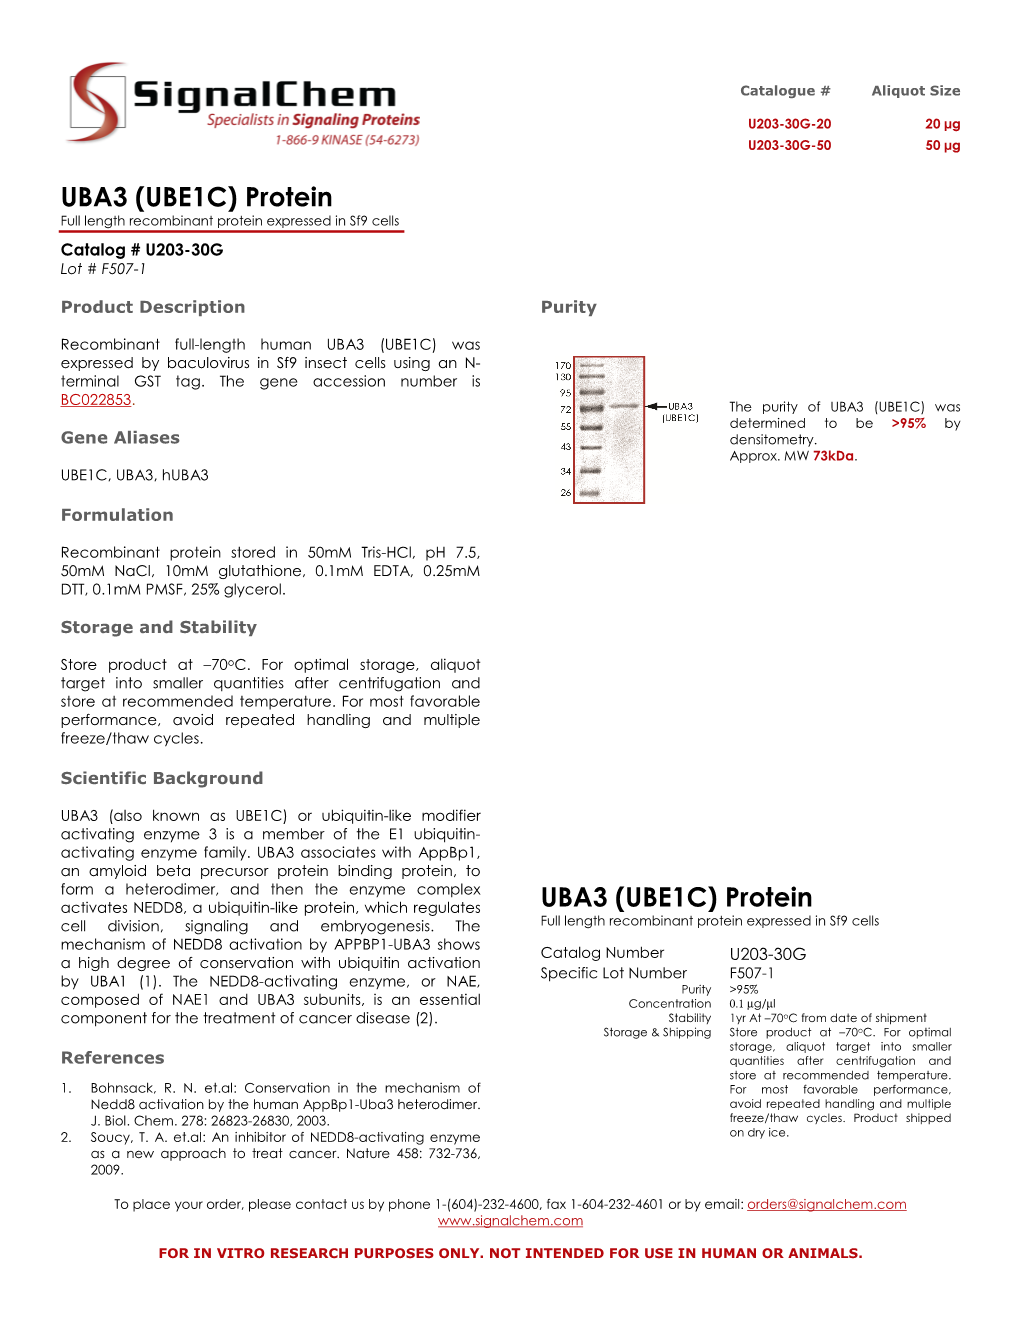 UBA3 (UBE1C) Protein UBA3 (UBE1C) Protein